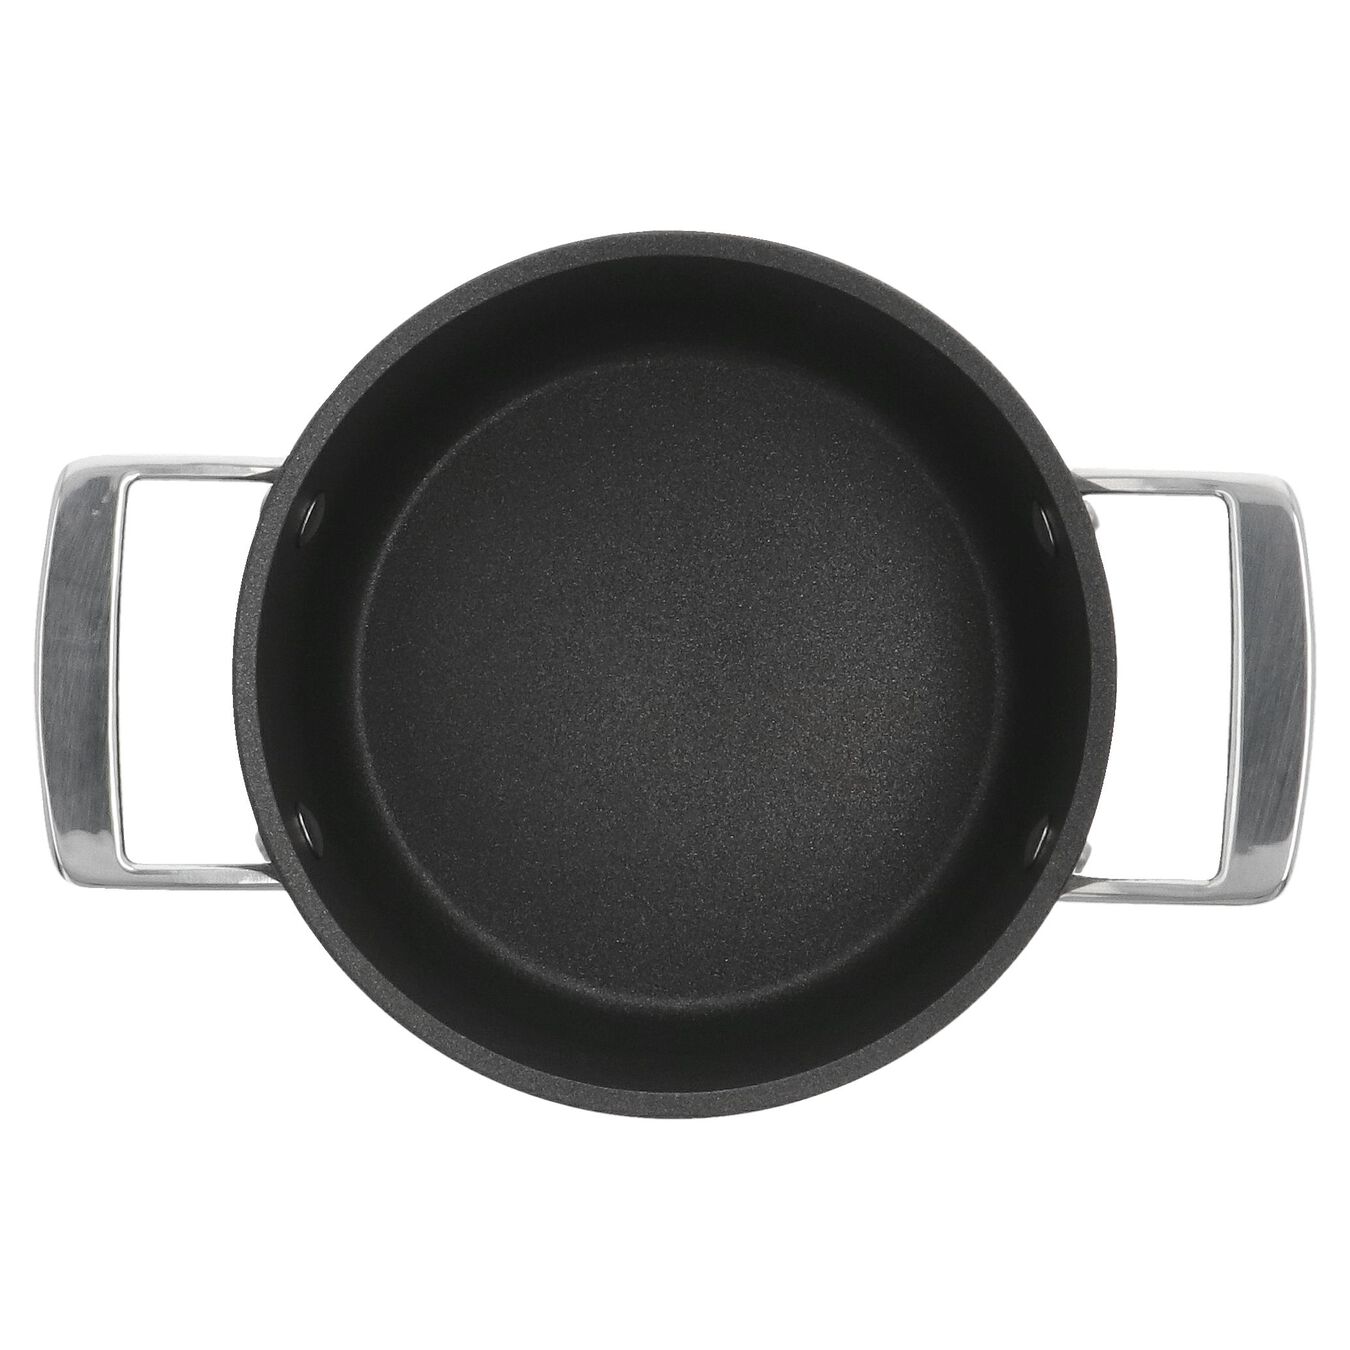 16 cm Aluminum Stew pot with lid black,,large 5